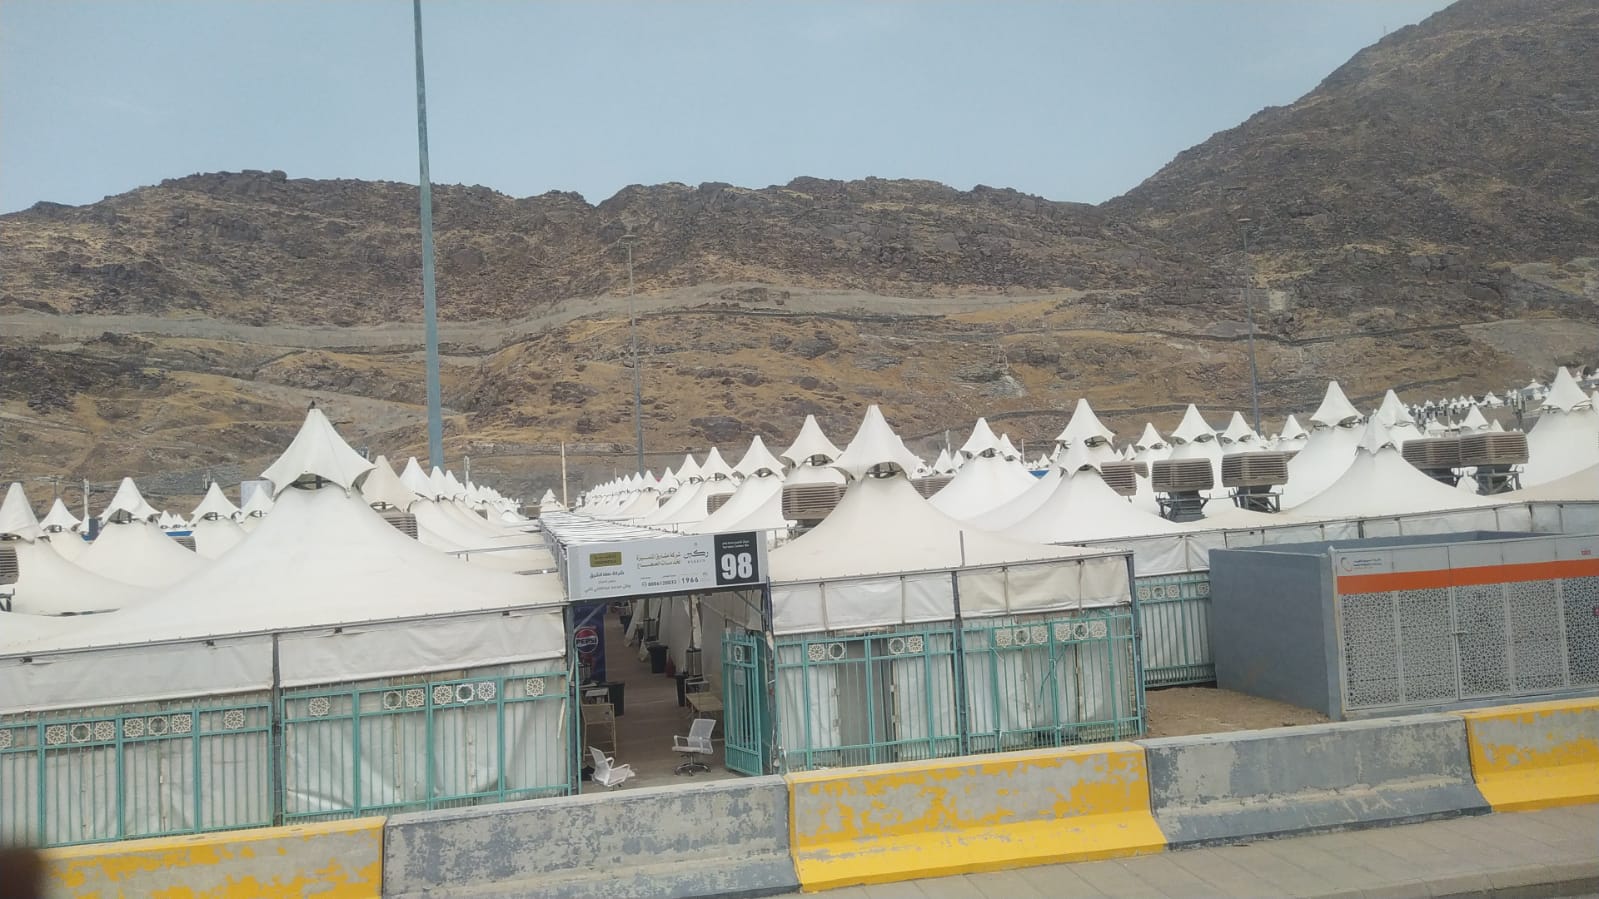 JCH Kloter 16 dan 18 OKI Pastikan Kesiapan Tenda di Arafah dan Mina, Persiapan Matang Menuju Haji Mabrur